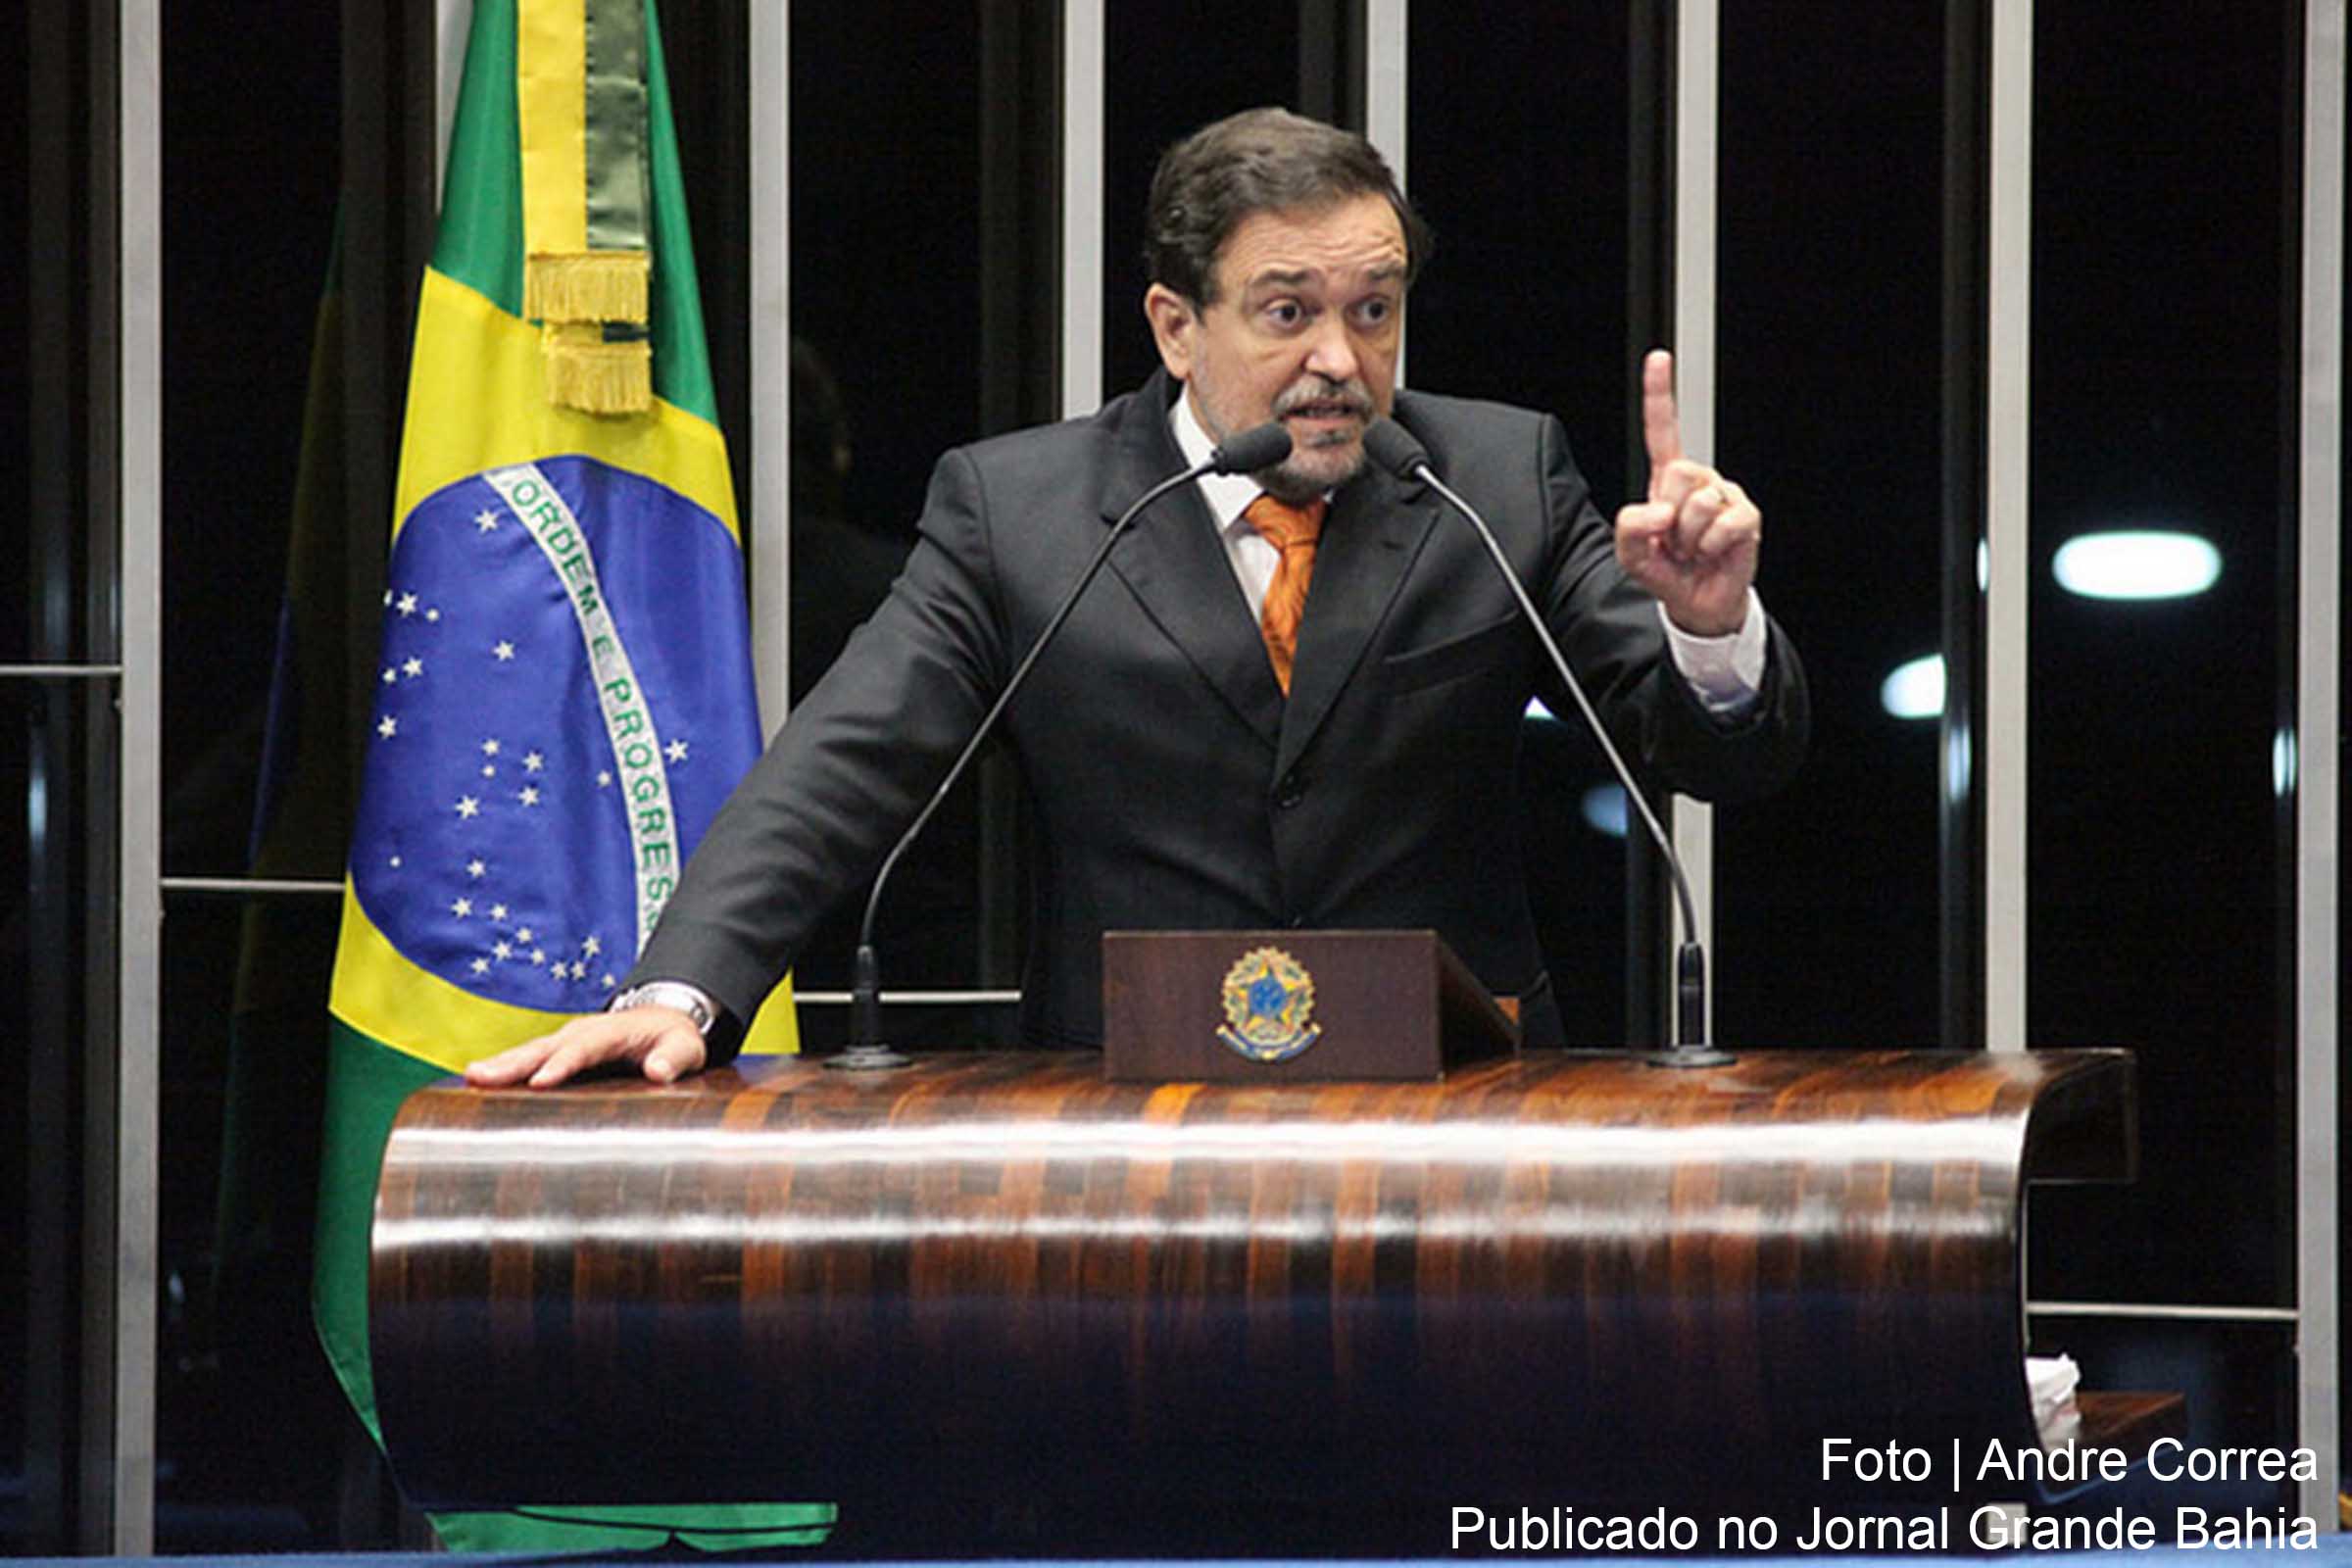 Senador Walter Pinheiro: "“A formula progressiva apresentada pelo Governo, apesar de não ser a ideal, é um avanço".